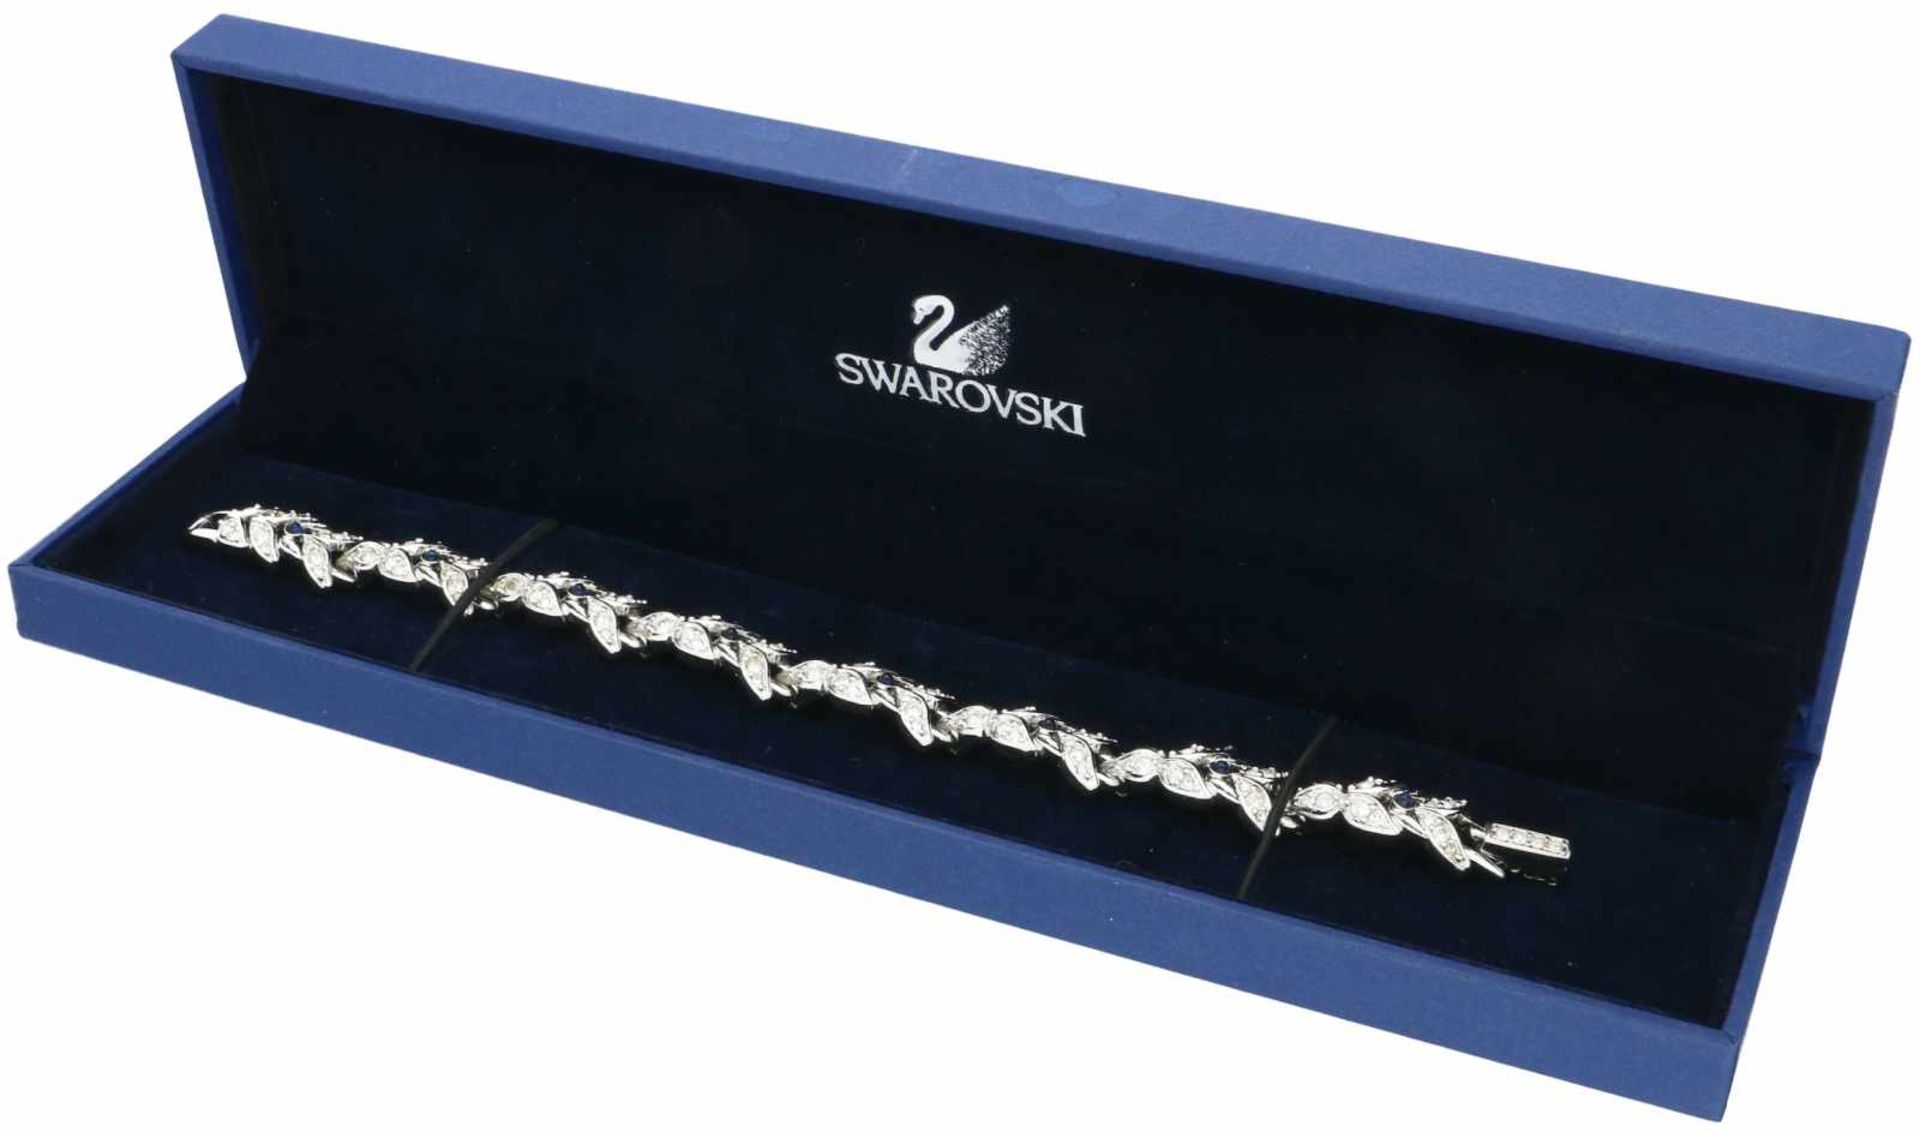 Stalen Swarovski armband, met zirkonia en blauwe siersteen. - Bild 4 aus 4